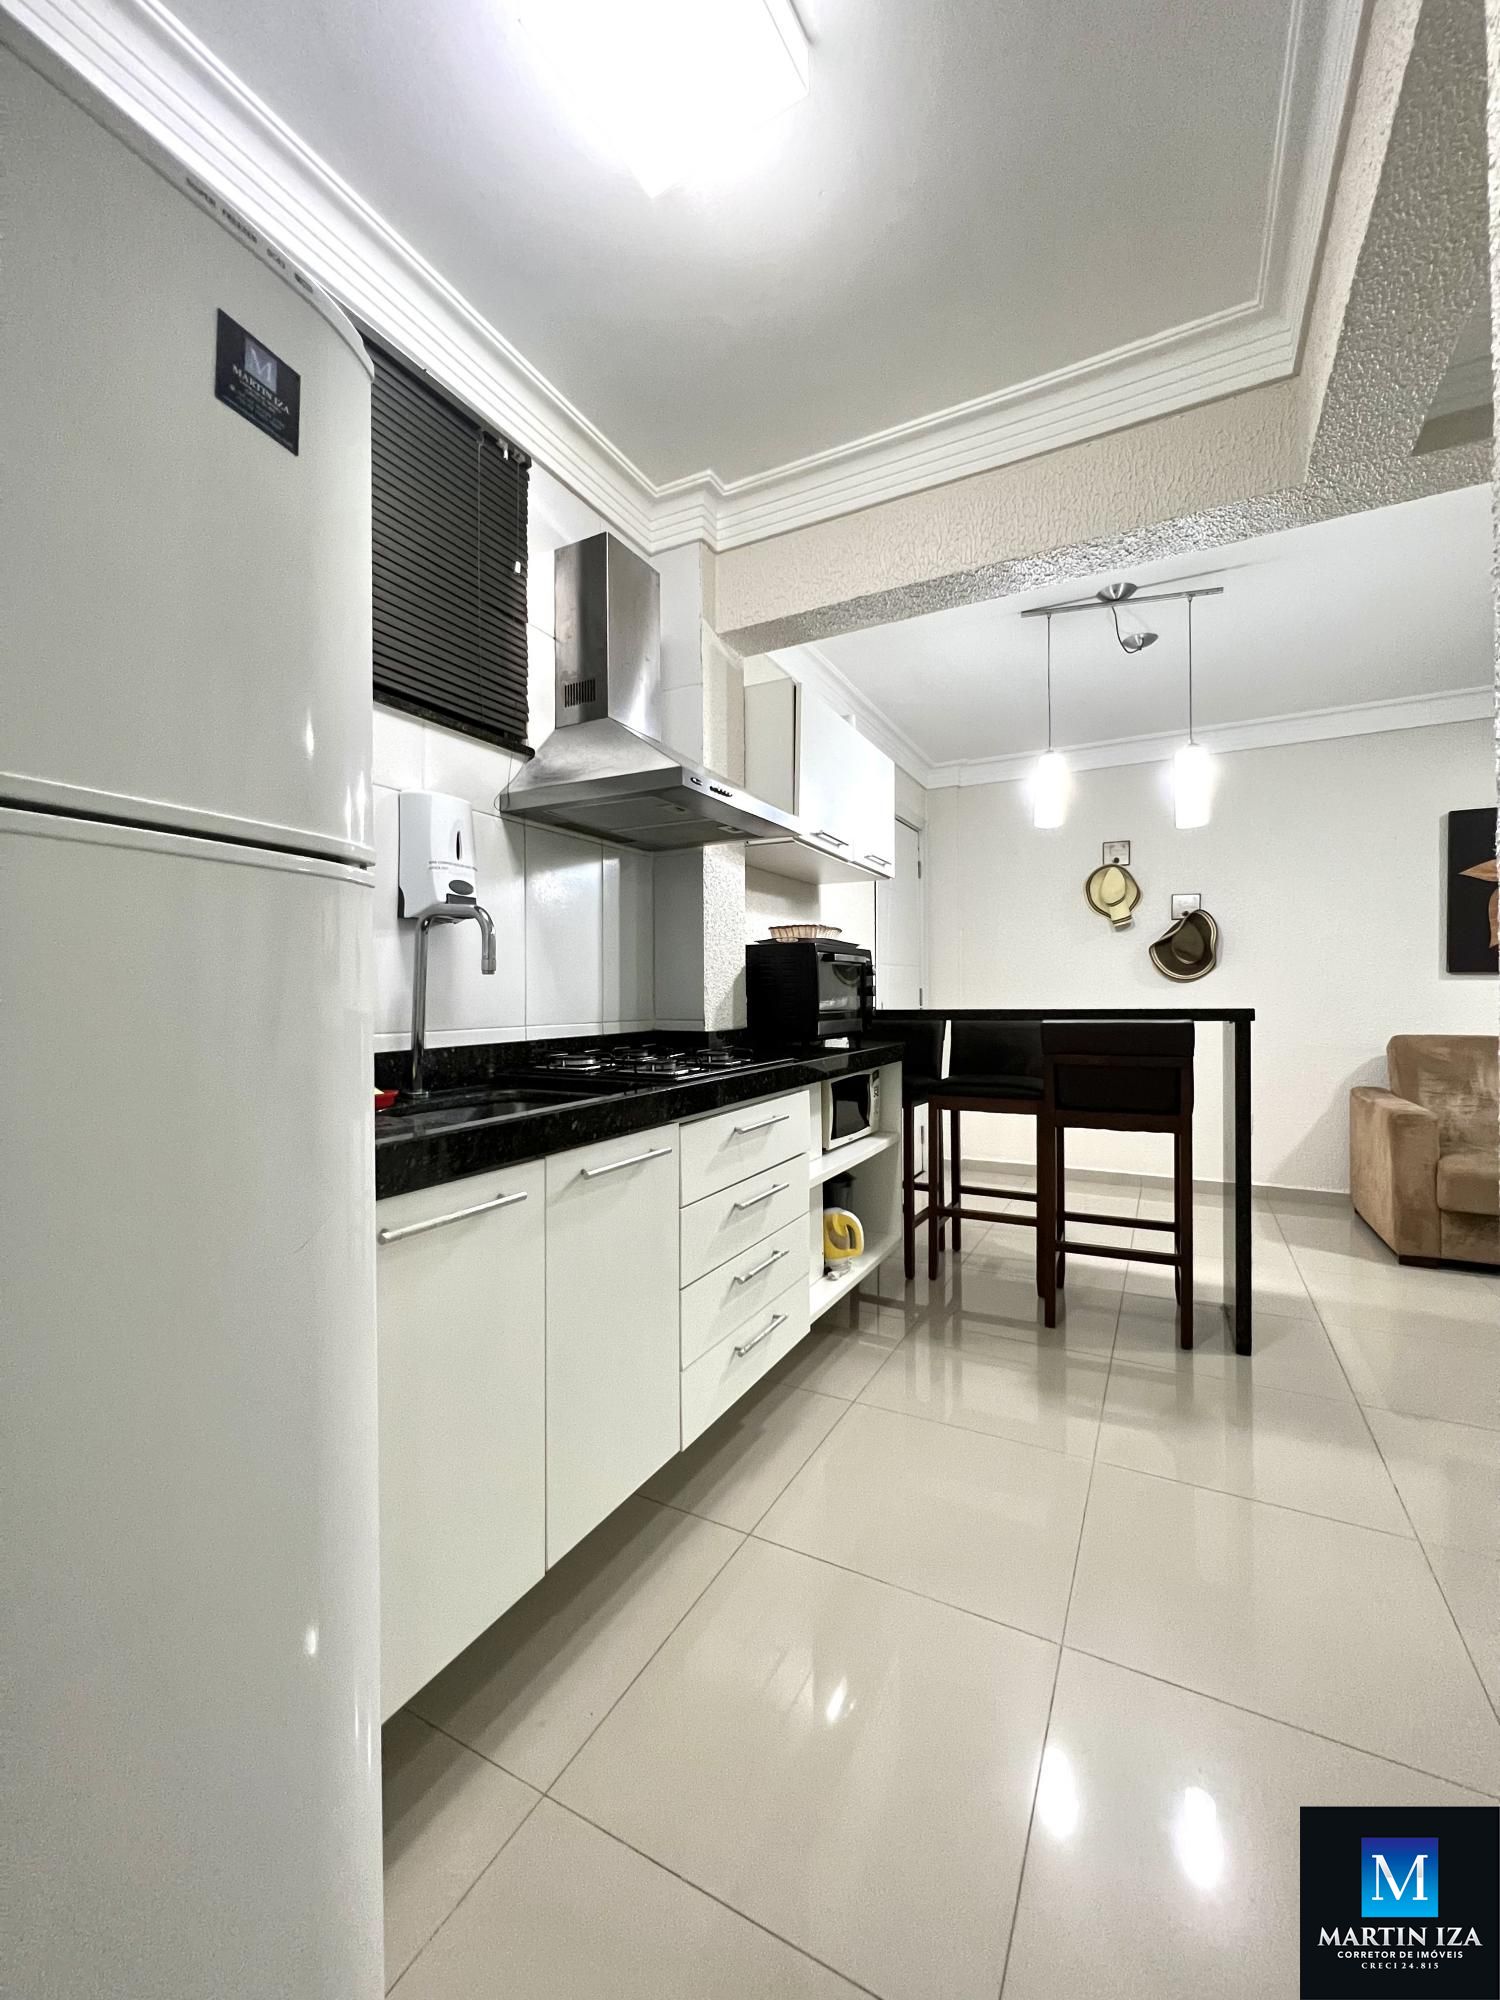 Apartamento com 1 Dormitórios para alugar, 44 m² por R$ 200,00